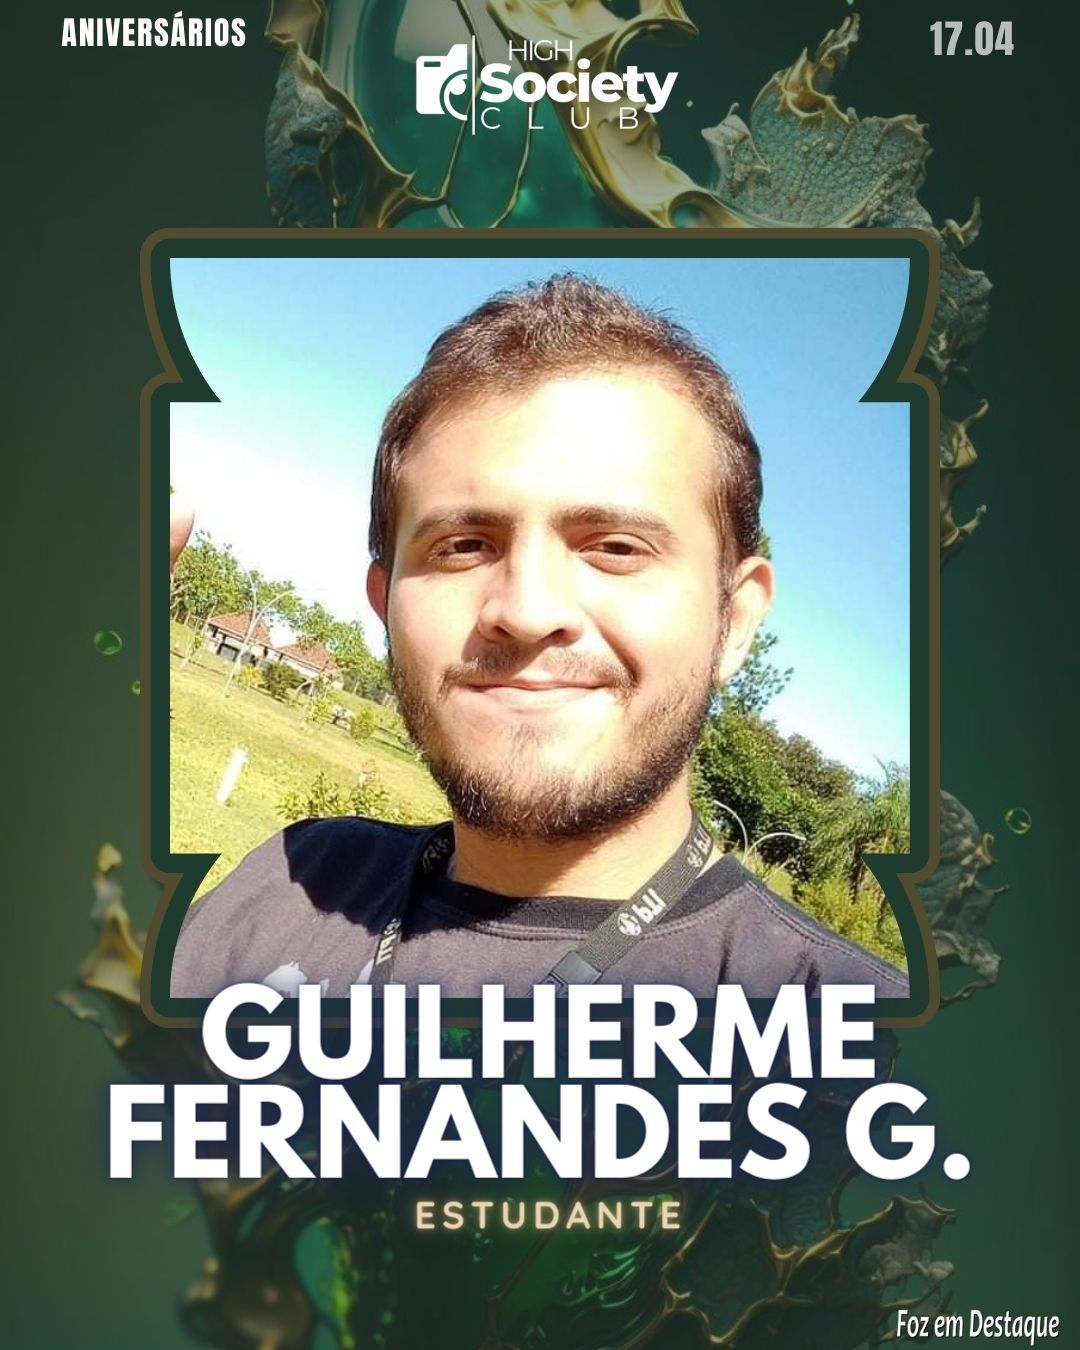 Guilherme Fernandes Guimarães - High Society Club Foz em Destaque